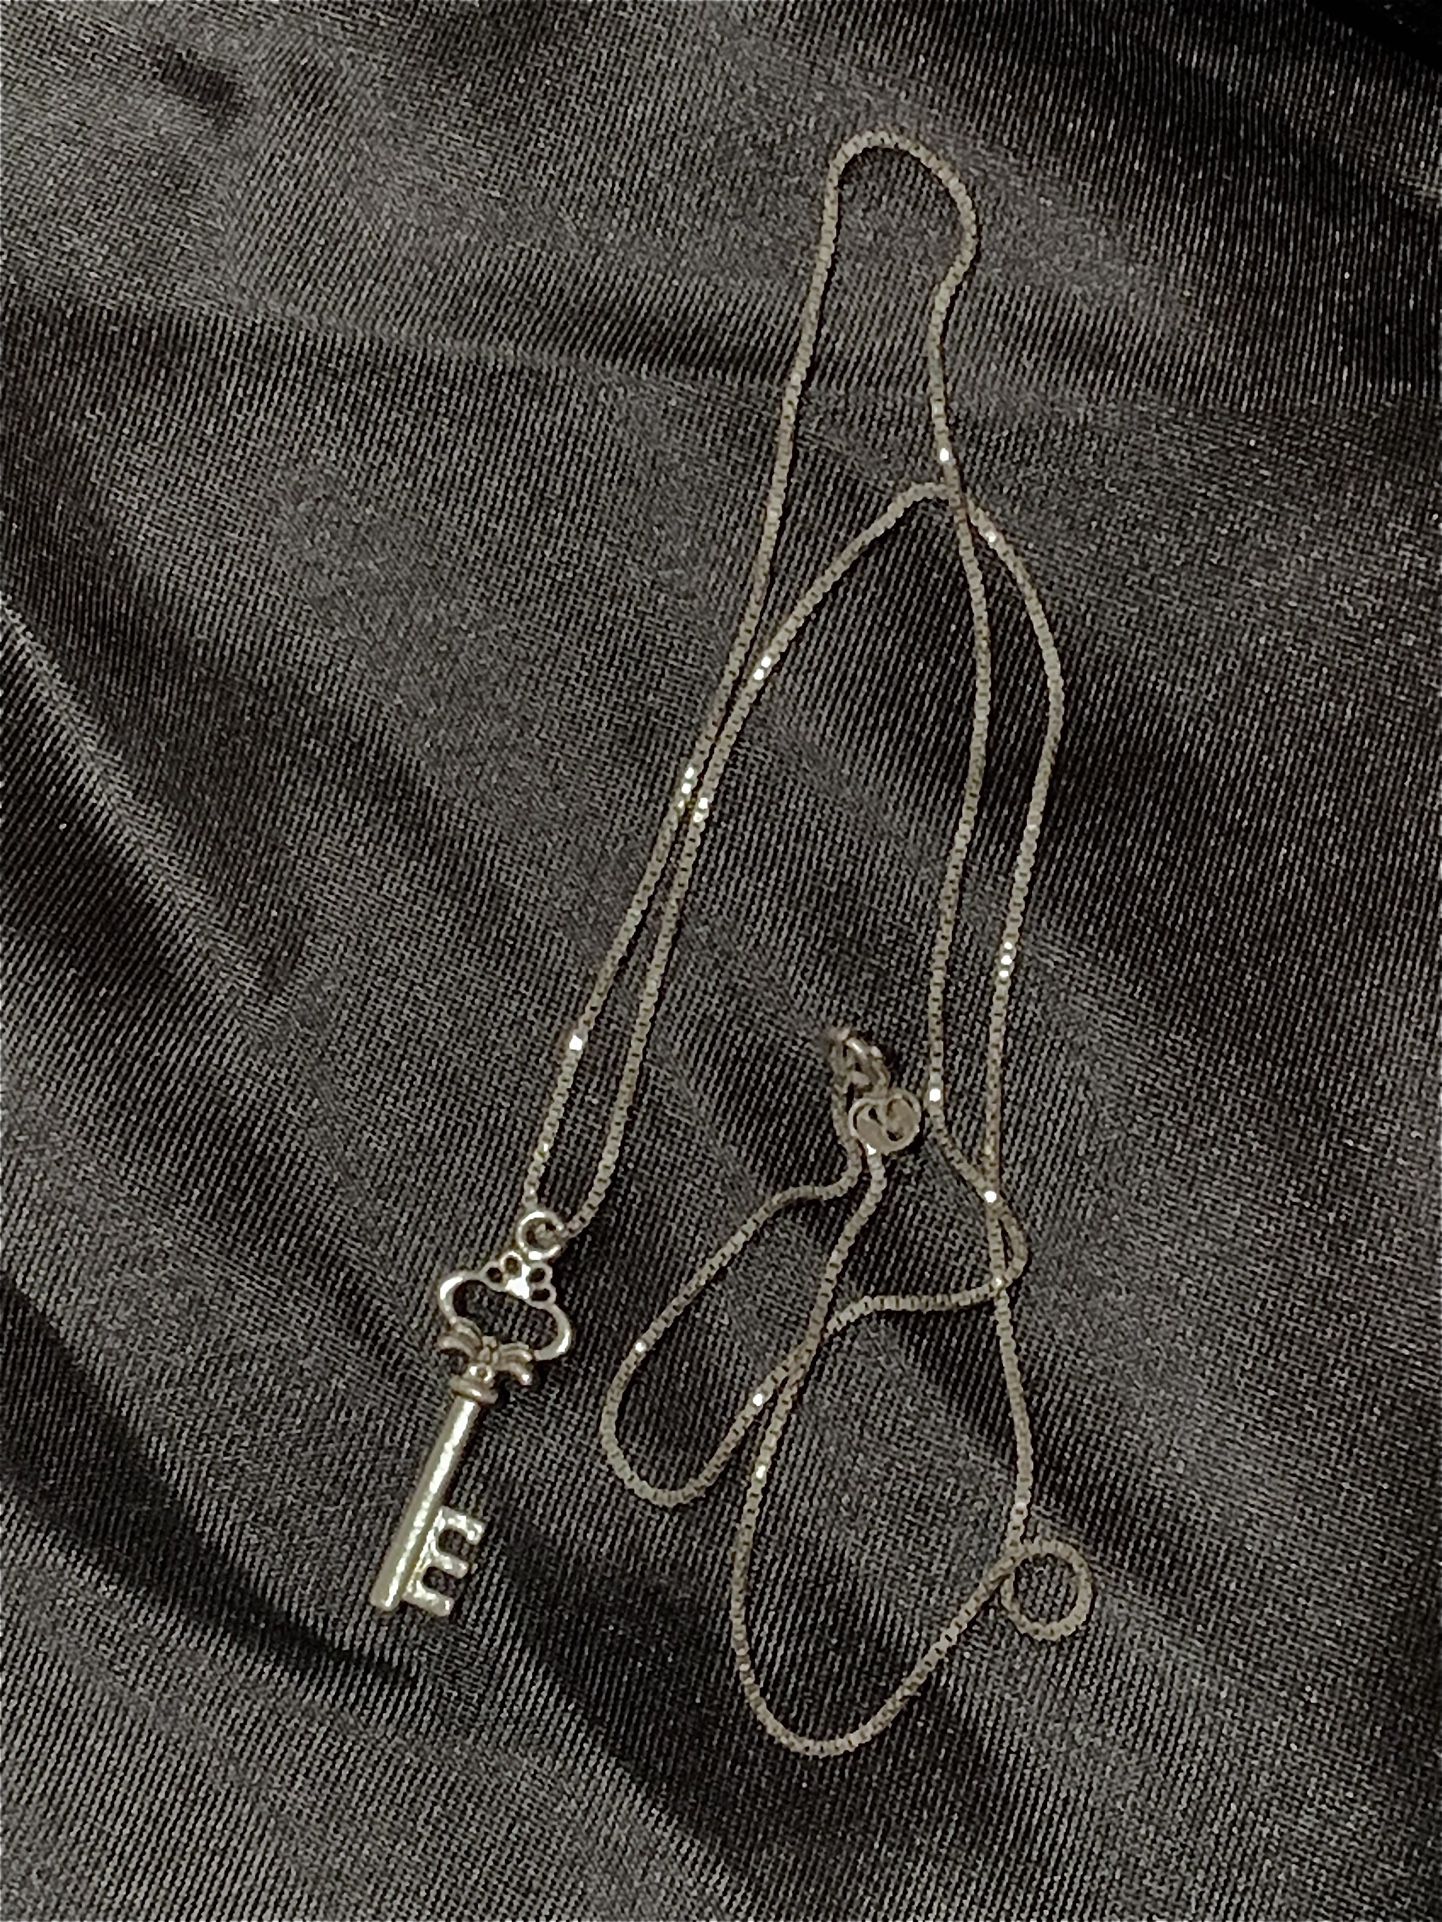 Key Necklace 